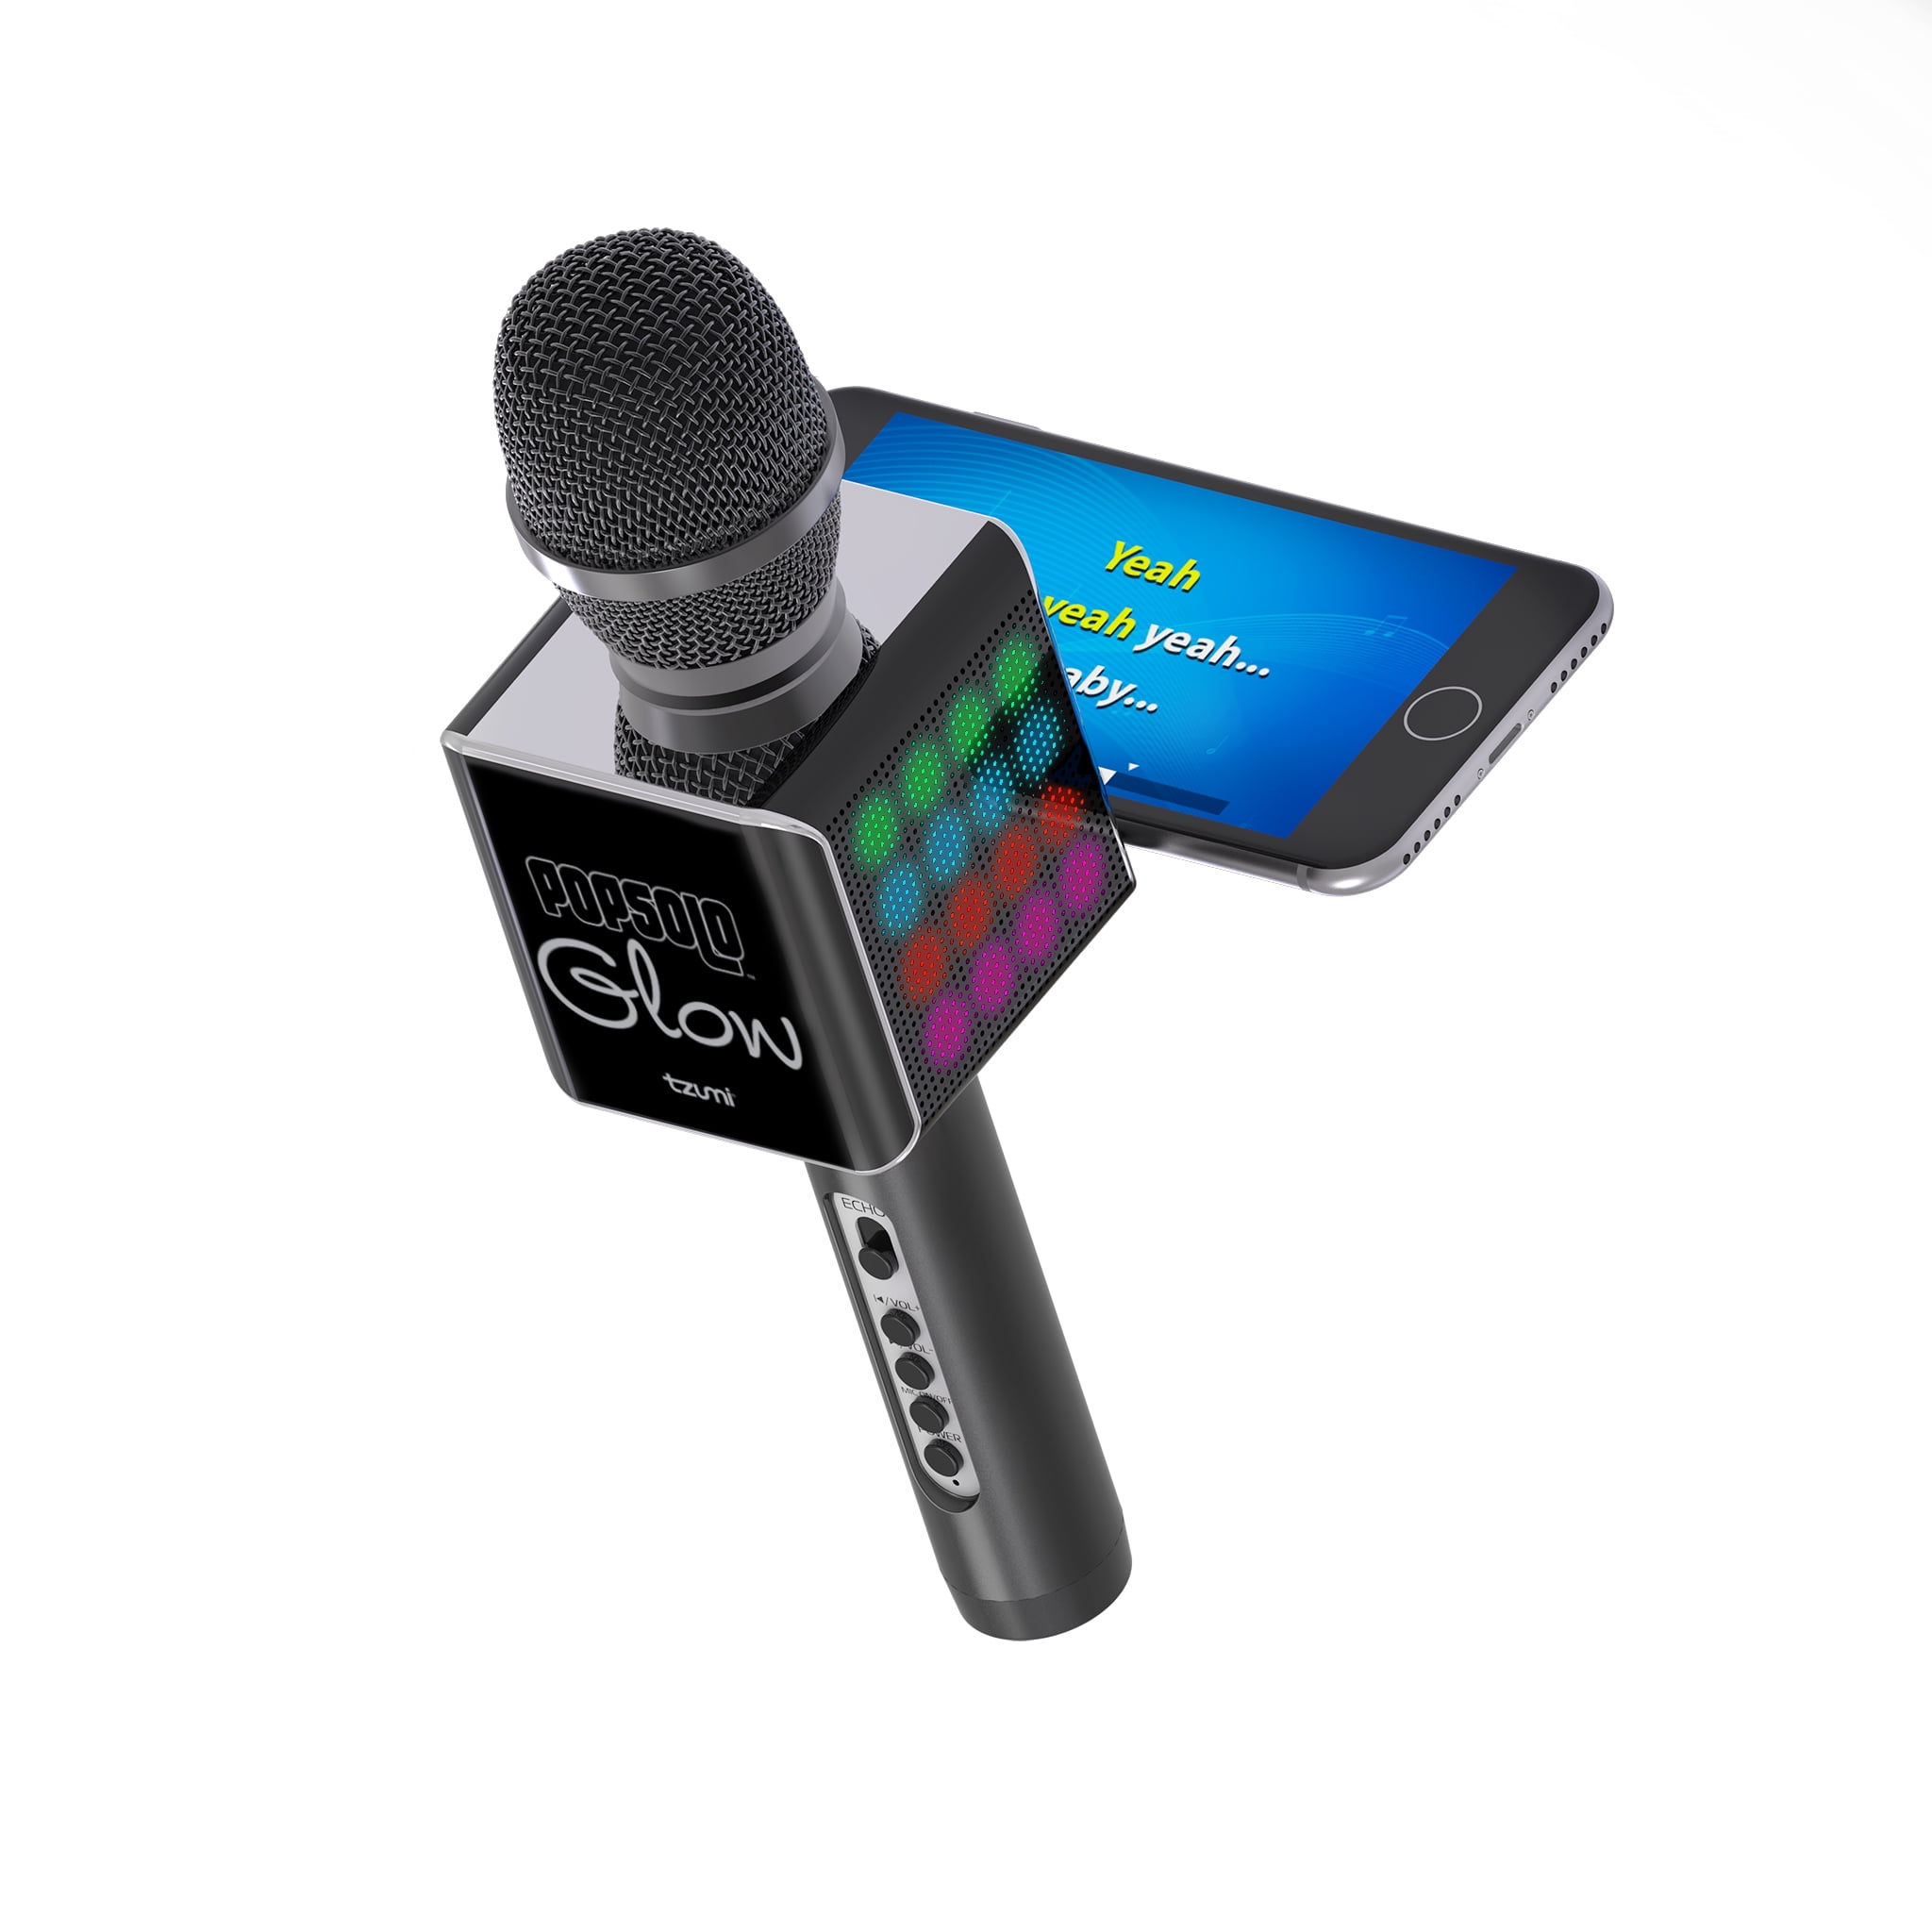 Bluetooth микрофон для телефона. Комплект микрофонов JBL Wireless Microphone Set. Комплект микрофонов JBL Wireless Microphone Set (Black). Микрофон-караоке s088 Bluetooth с динамиком черный. Караоке-микрофон Gabba goods g Wireless.